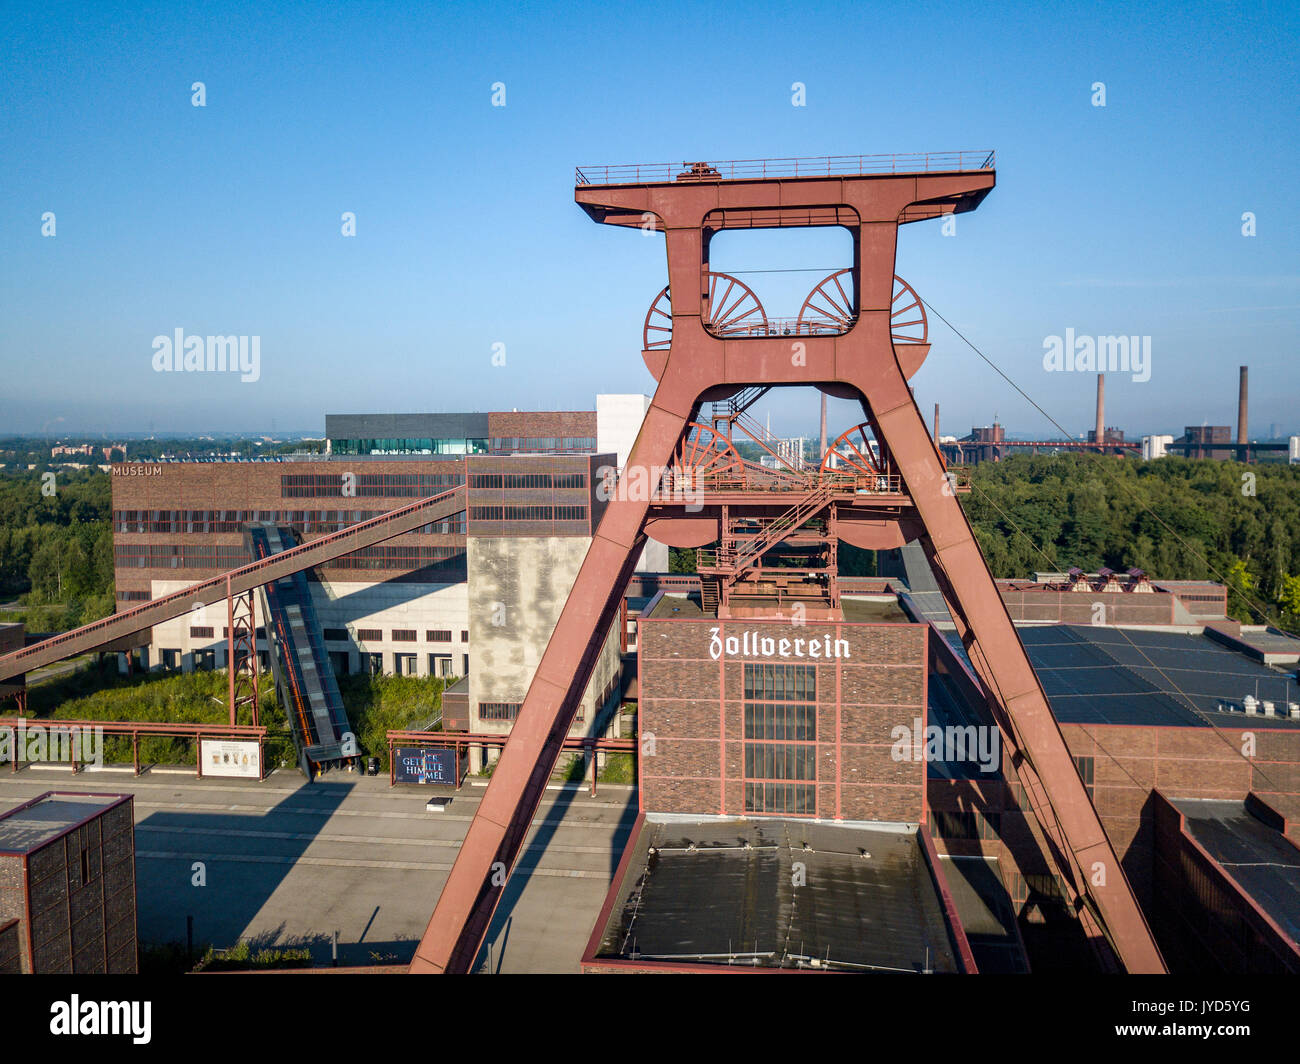 Zeche Zollverein, Weltkulturerbe der Unesco, in Essen, Deutschland, ehemalige Weltweit größte Coal Mine, heute ein kulturelles Wahrzeichen im Ruhrgebiet, windi Stockfoto